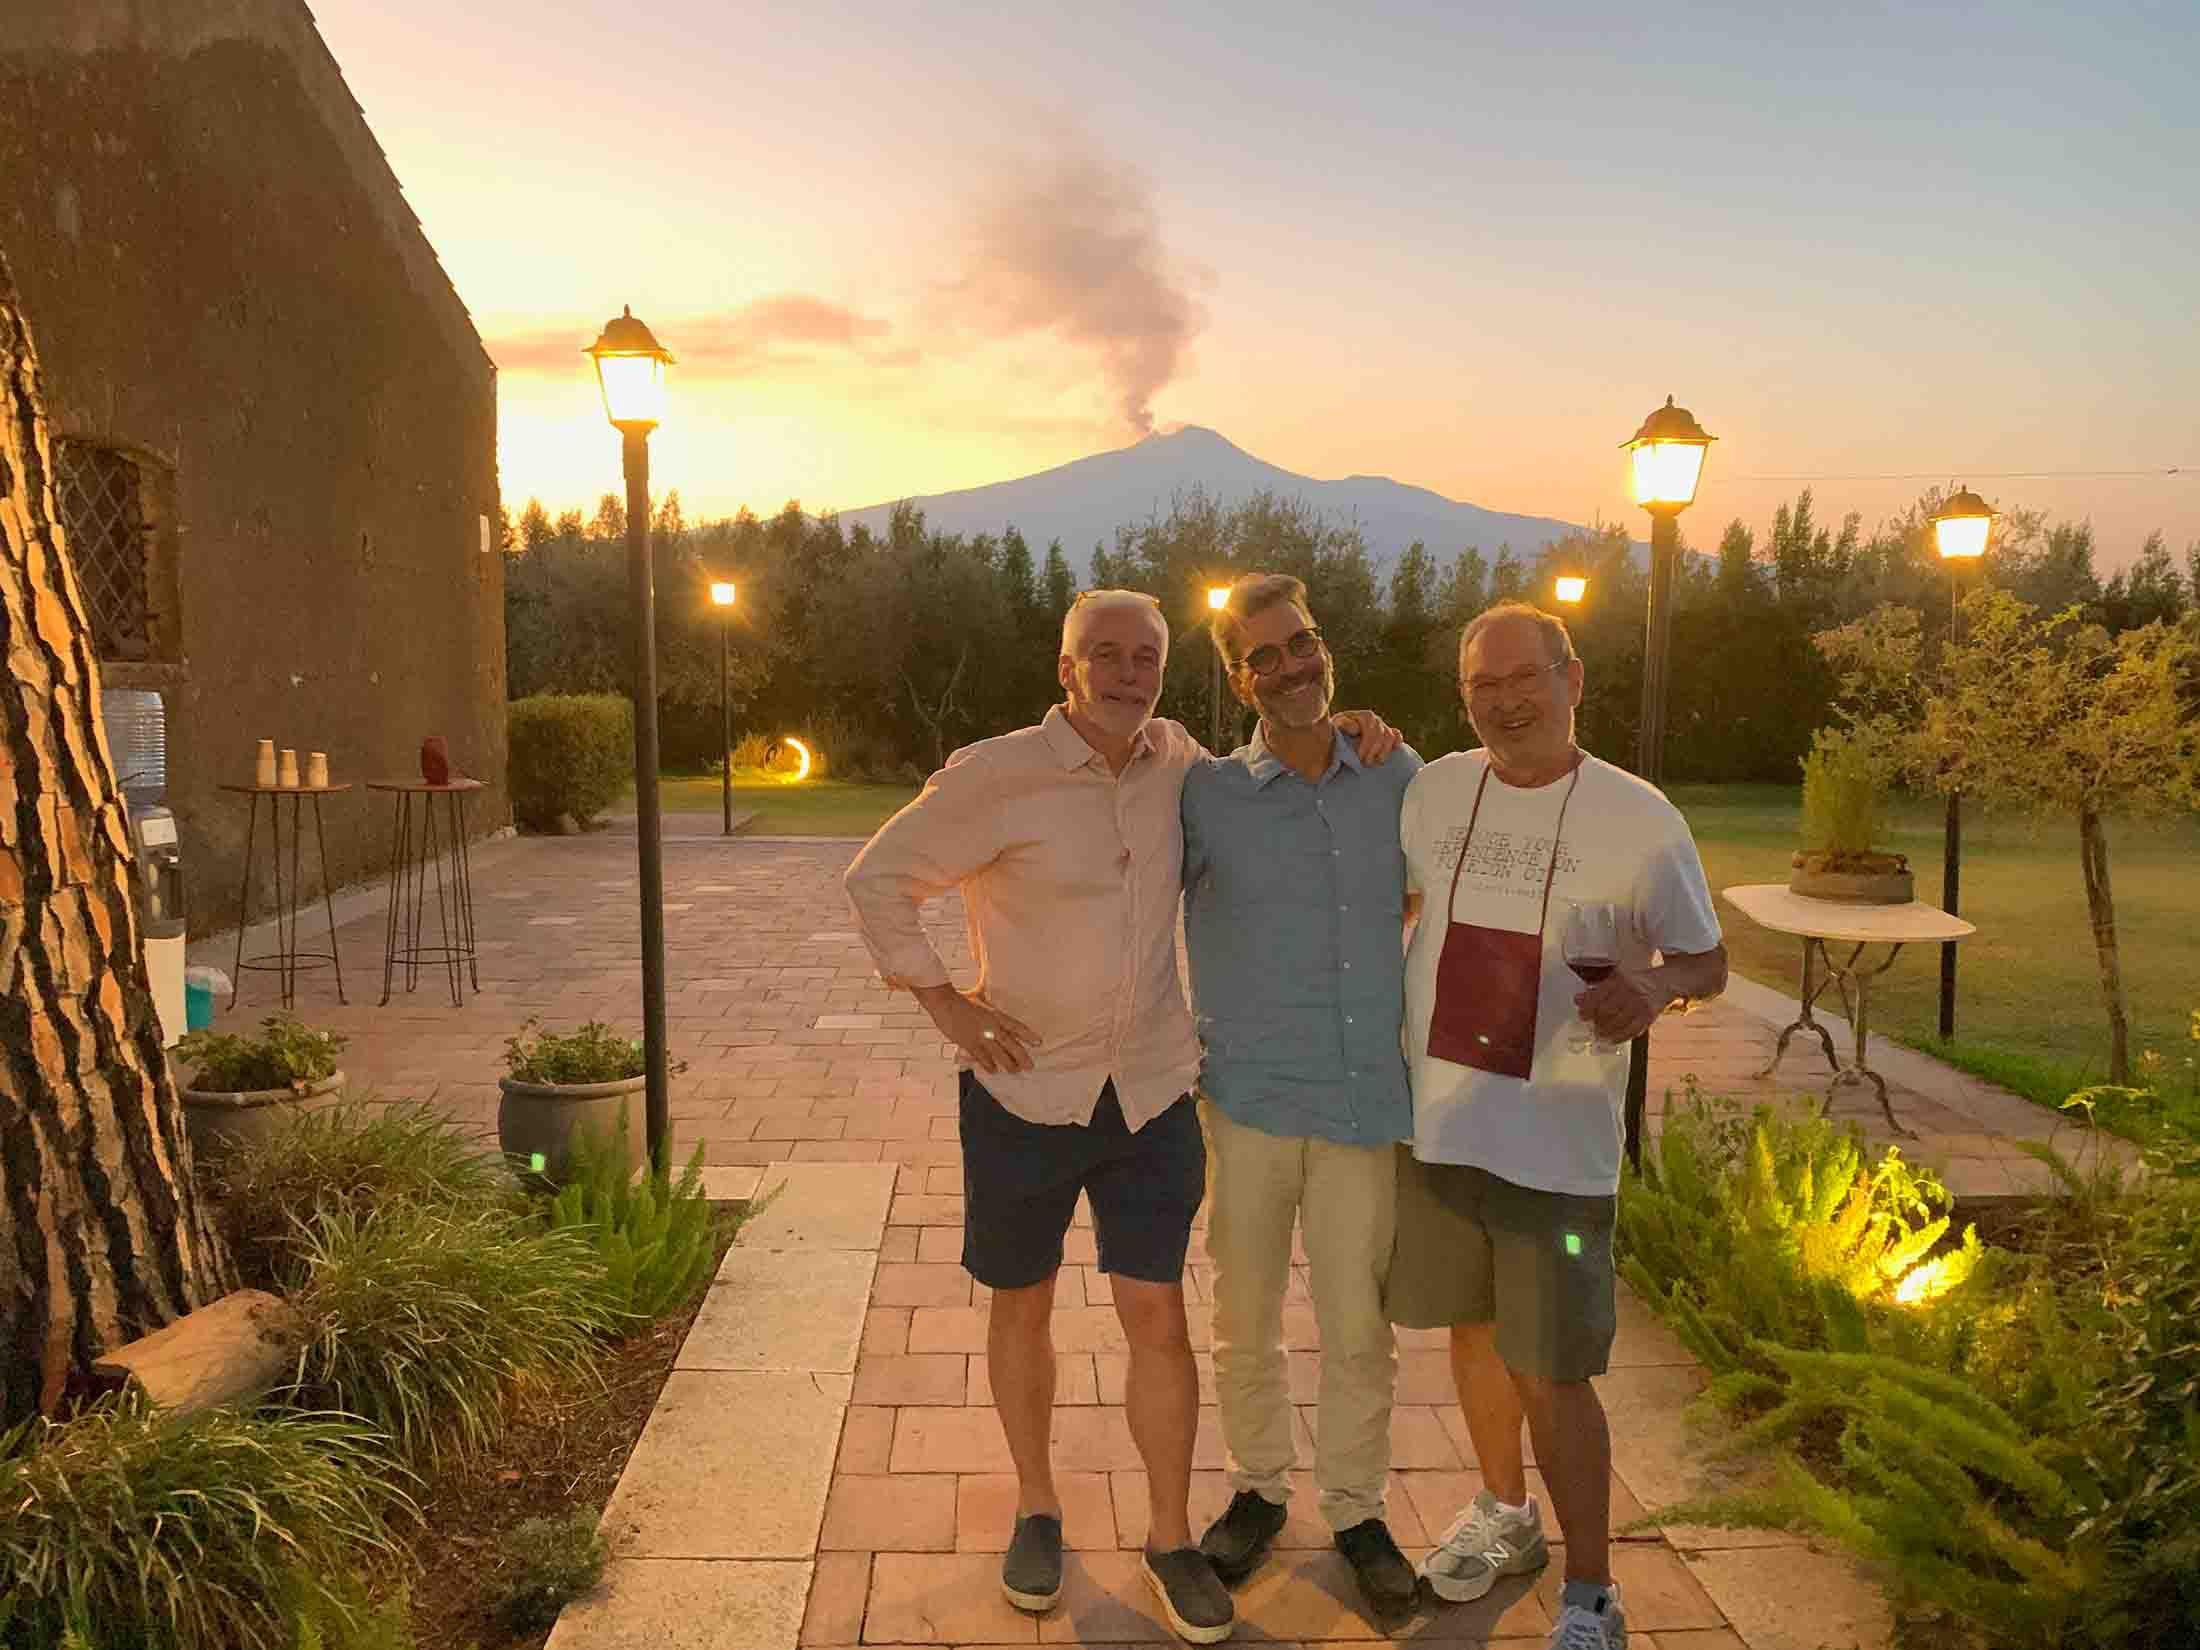 Brandon Tokash with Robert Camuto and Etna winemaker Frank Cornelissen